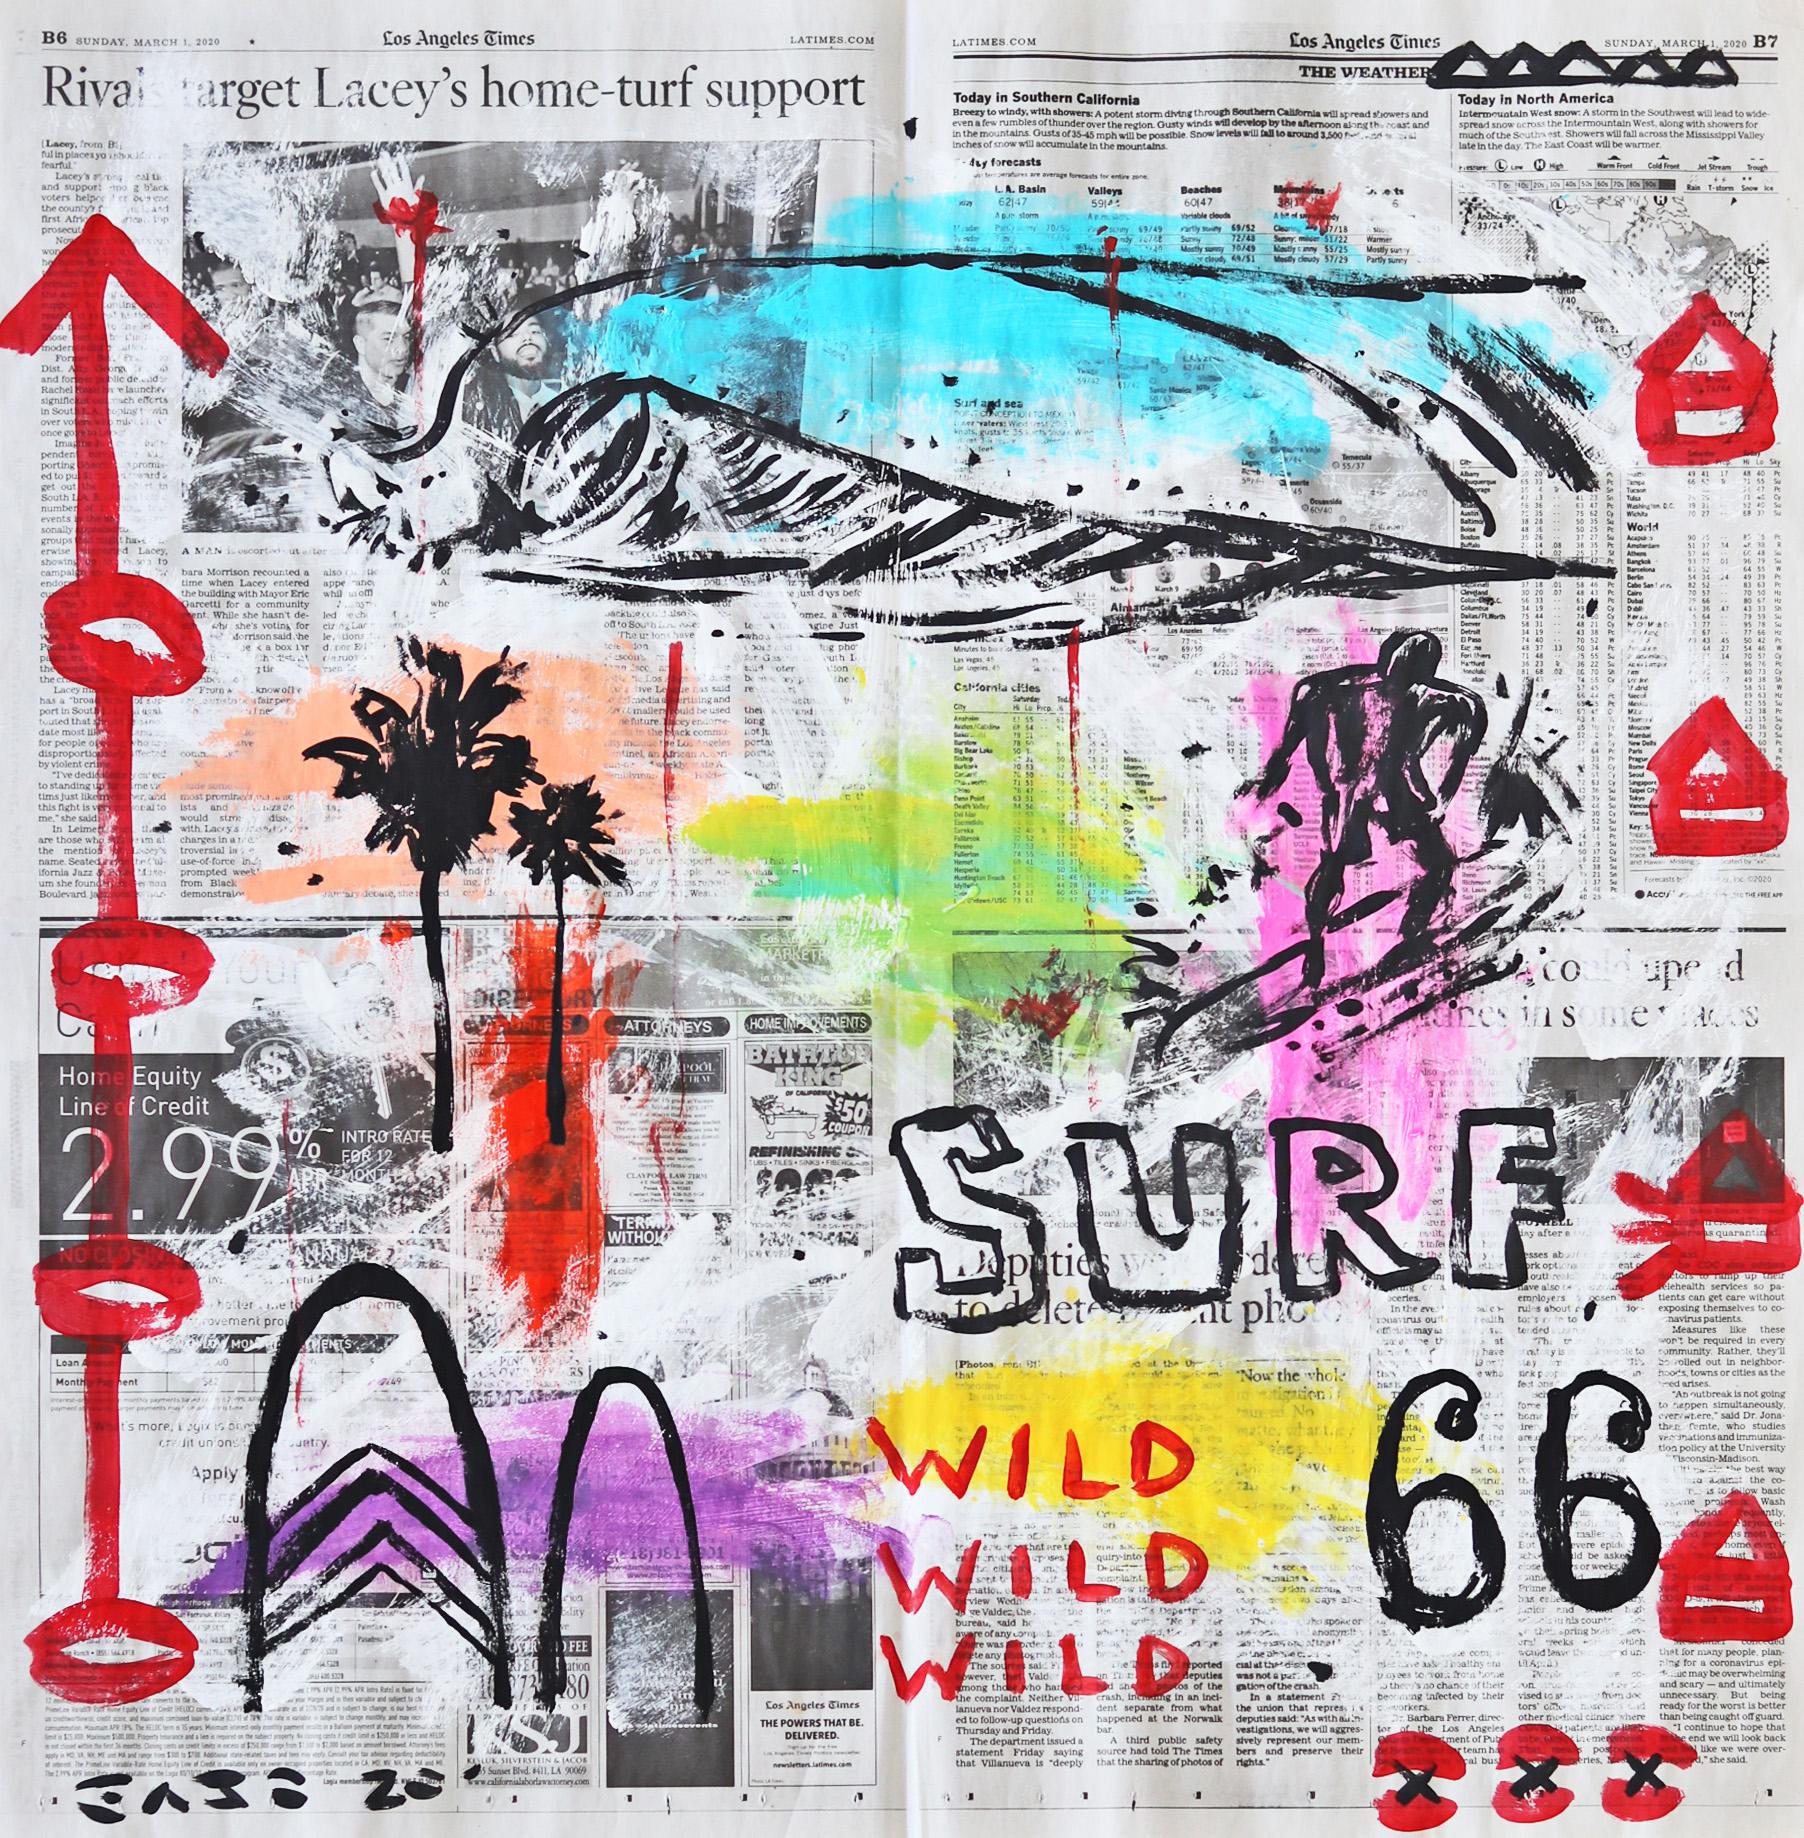 Wild Surf 66